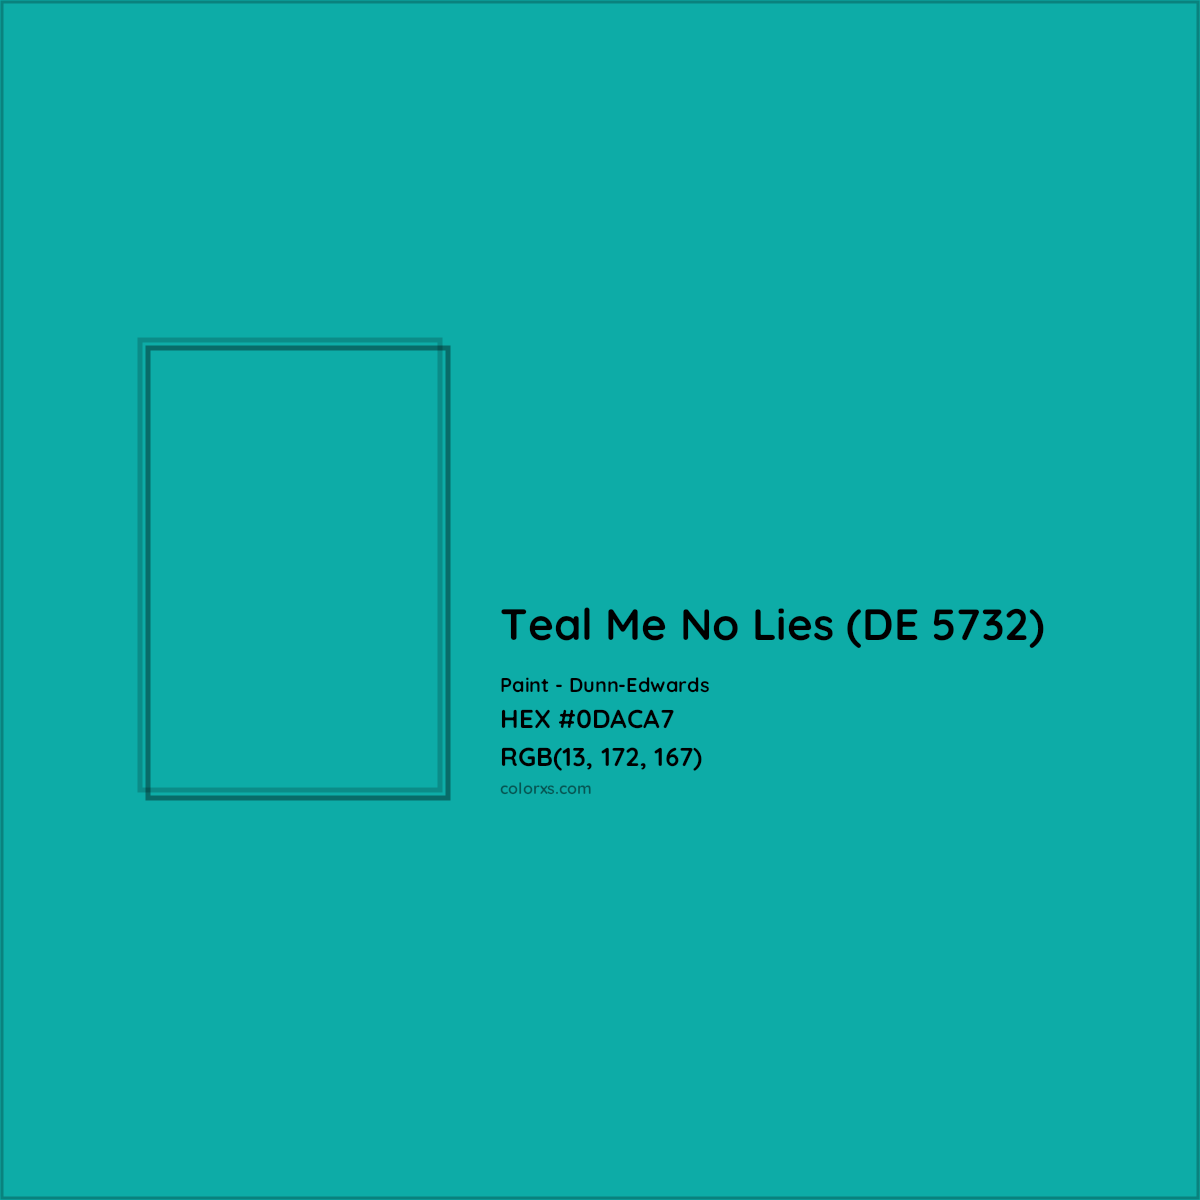 HEX #0DACA7 Teal Me No Lies (DE 5732) Paint Dunn-Edwards - Color Code